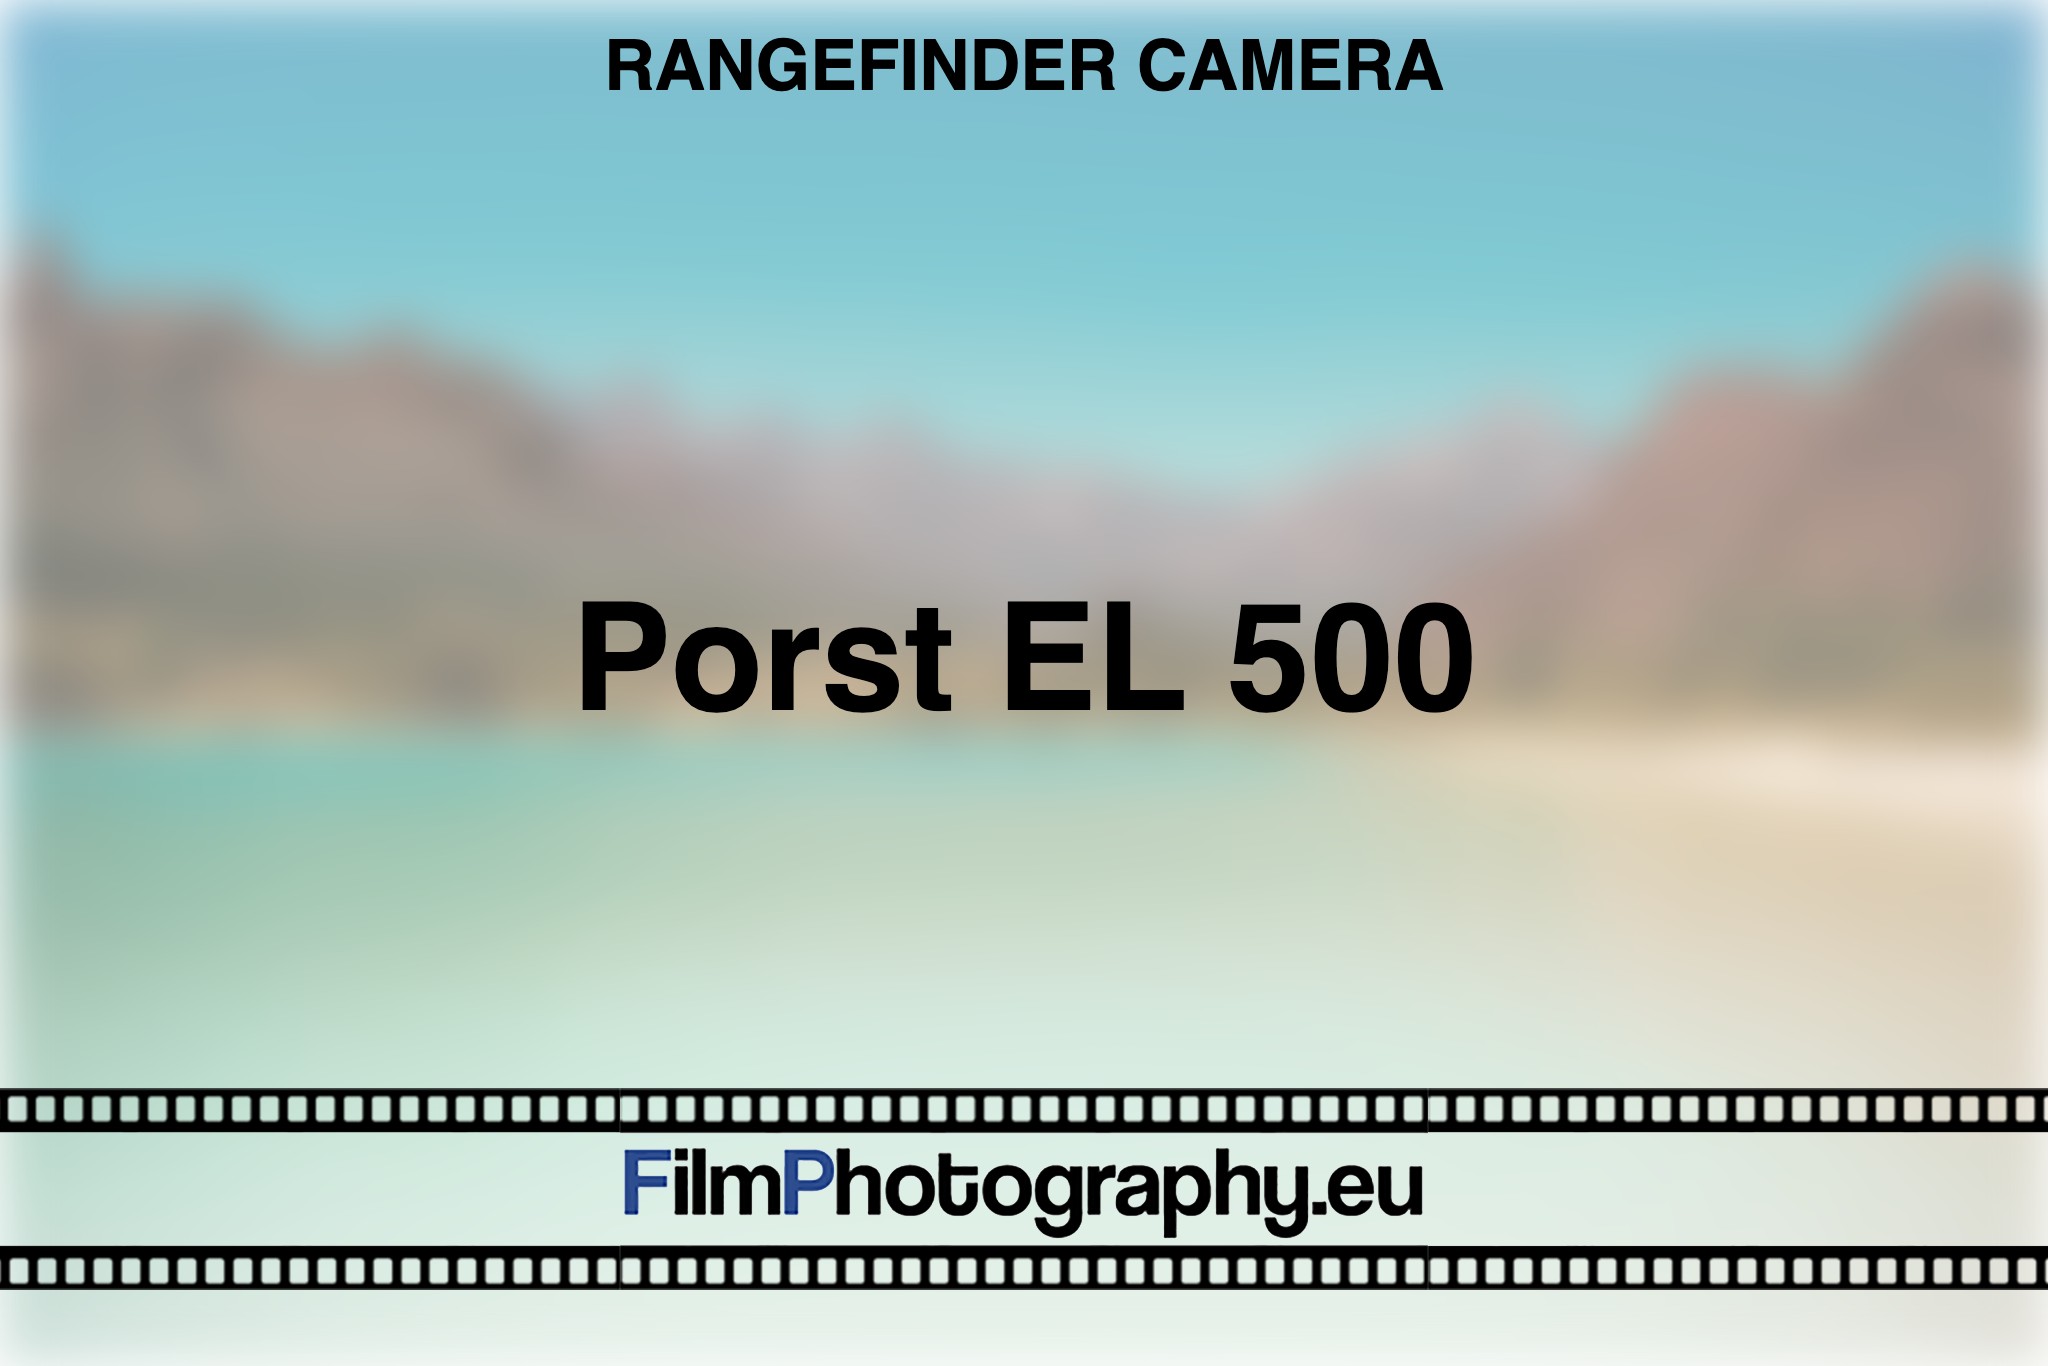 porst-el-500-rangefinder-camera-bnv